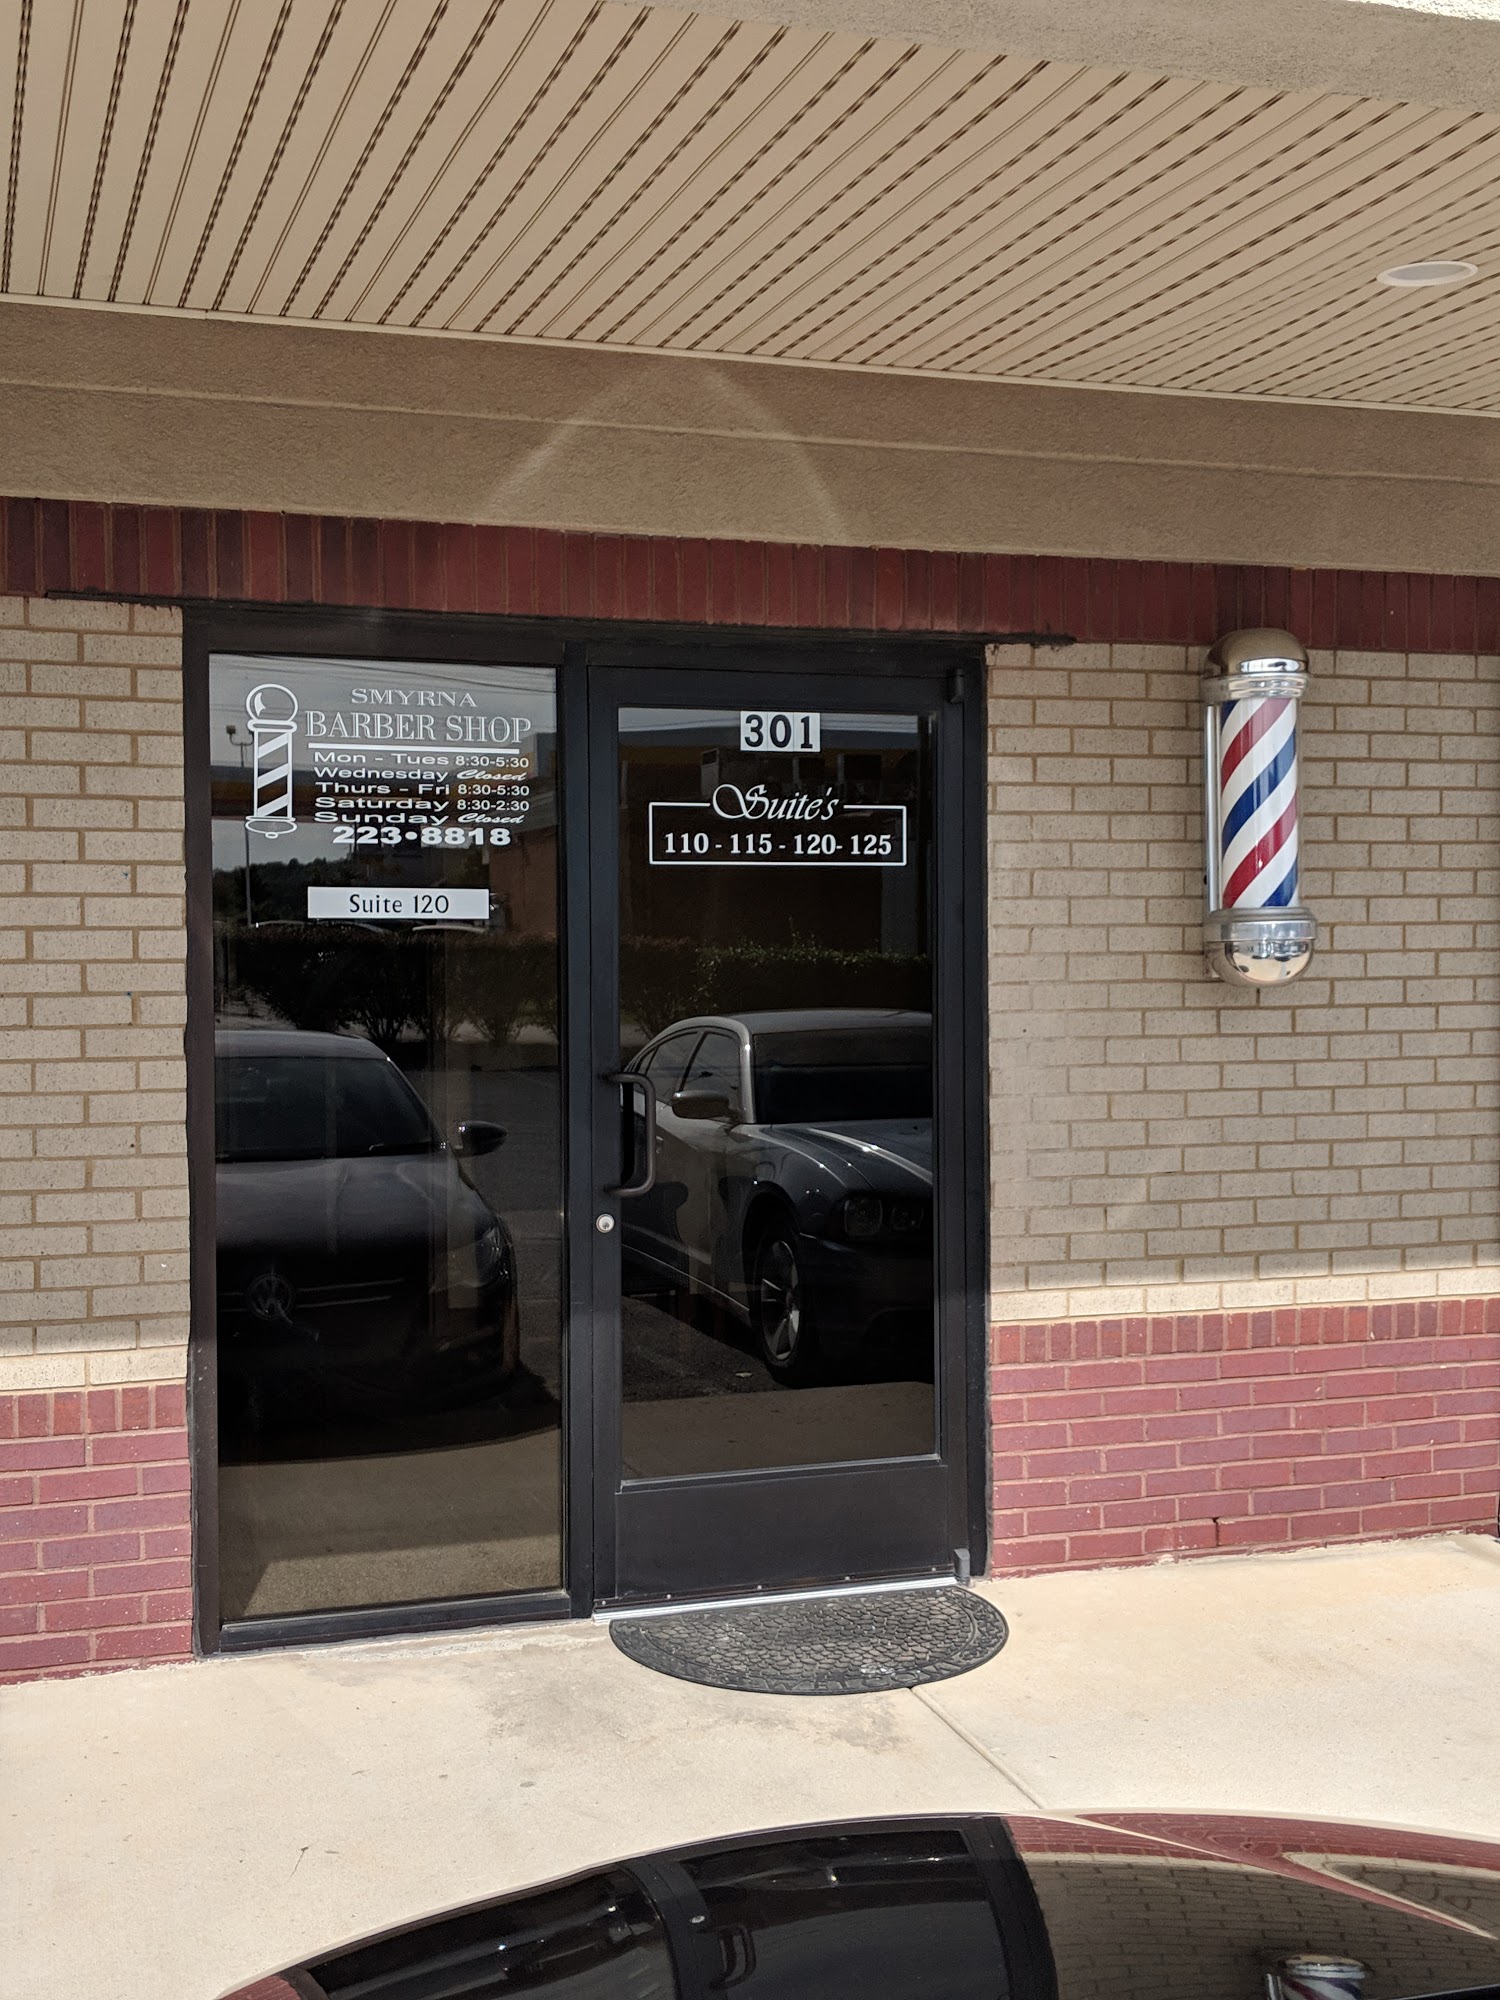 Smyrna Barber Shop